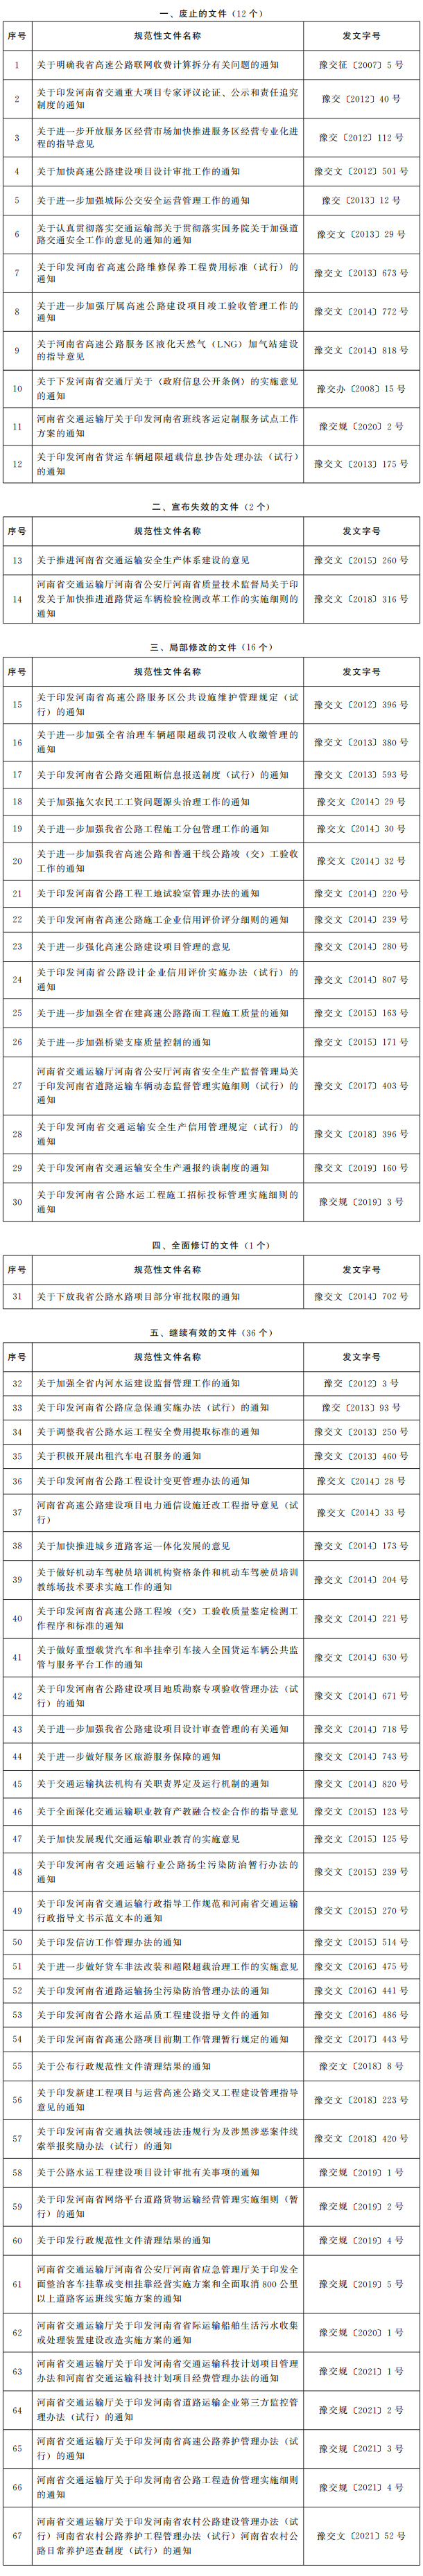 河南省交通运输厅关于公布行政规范性文件清理结果的通知